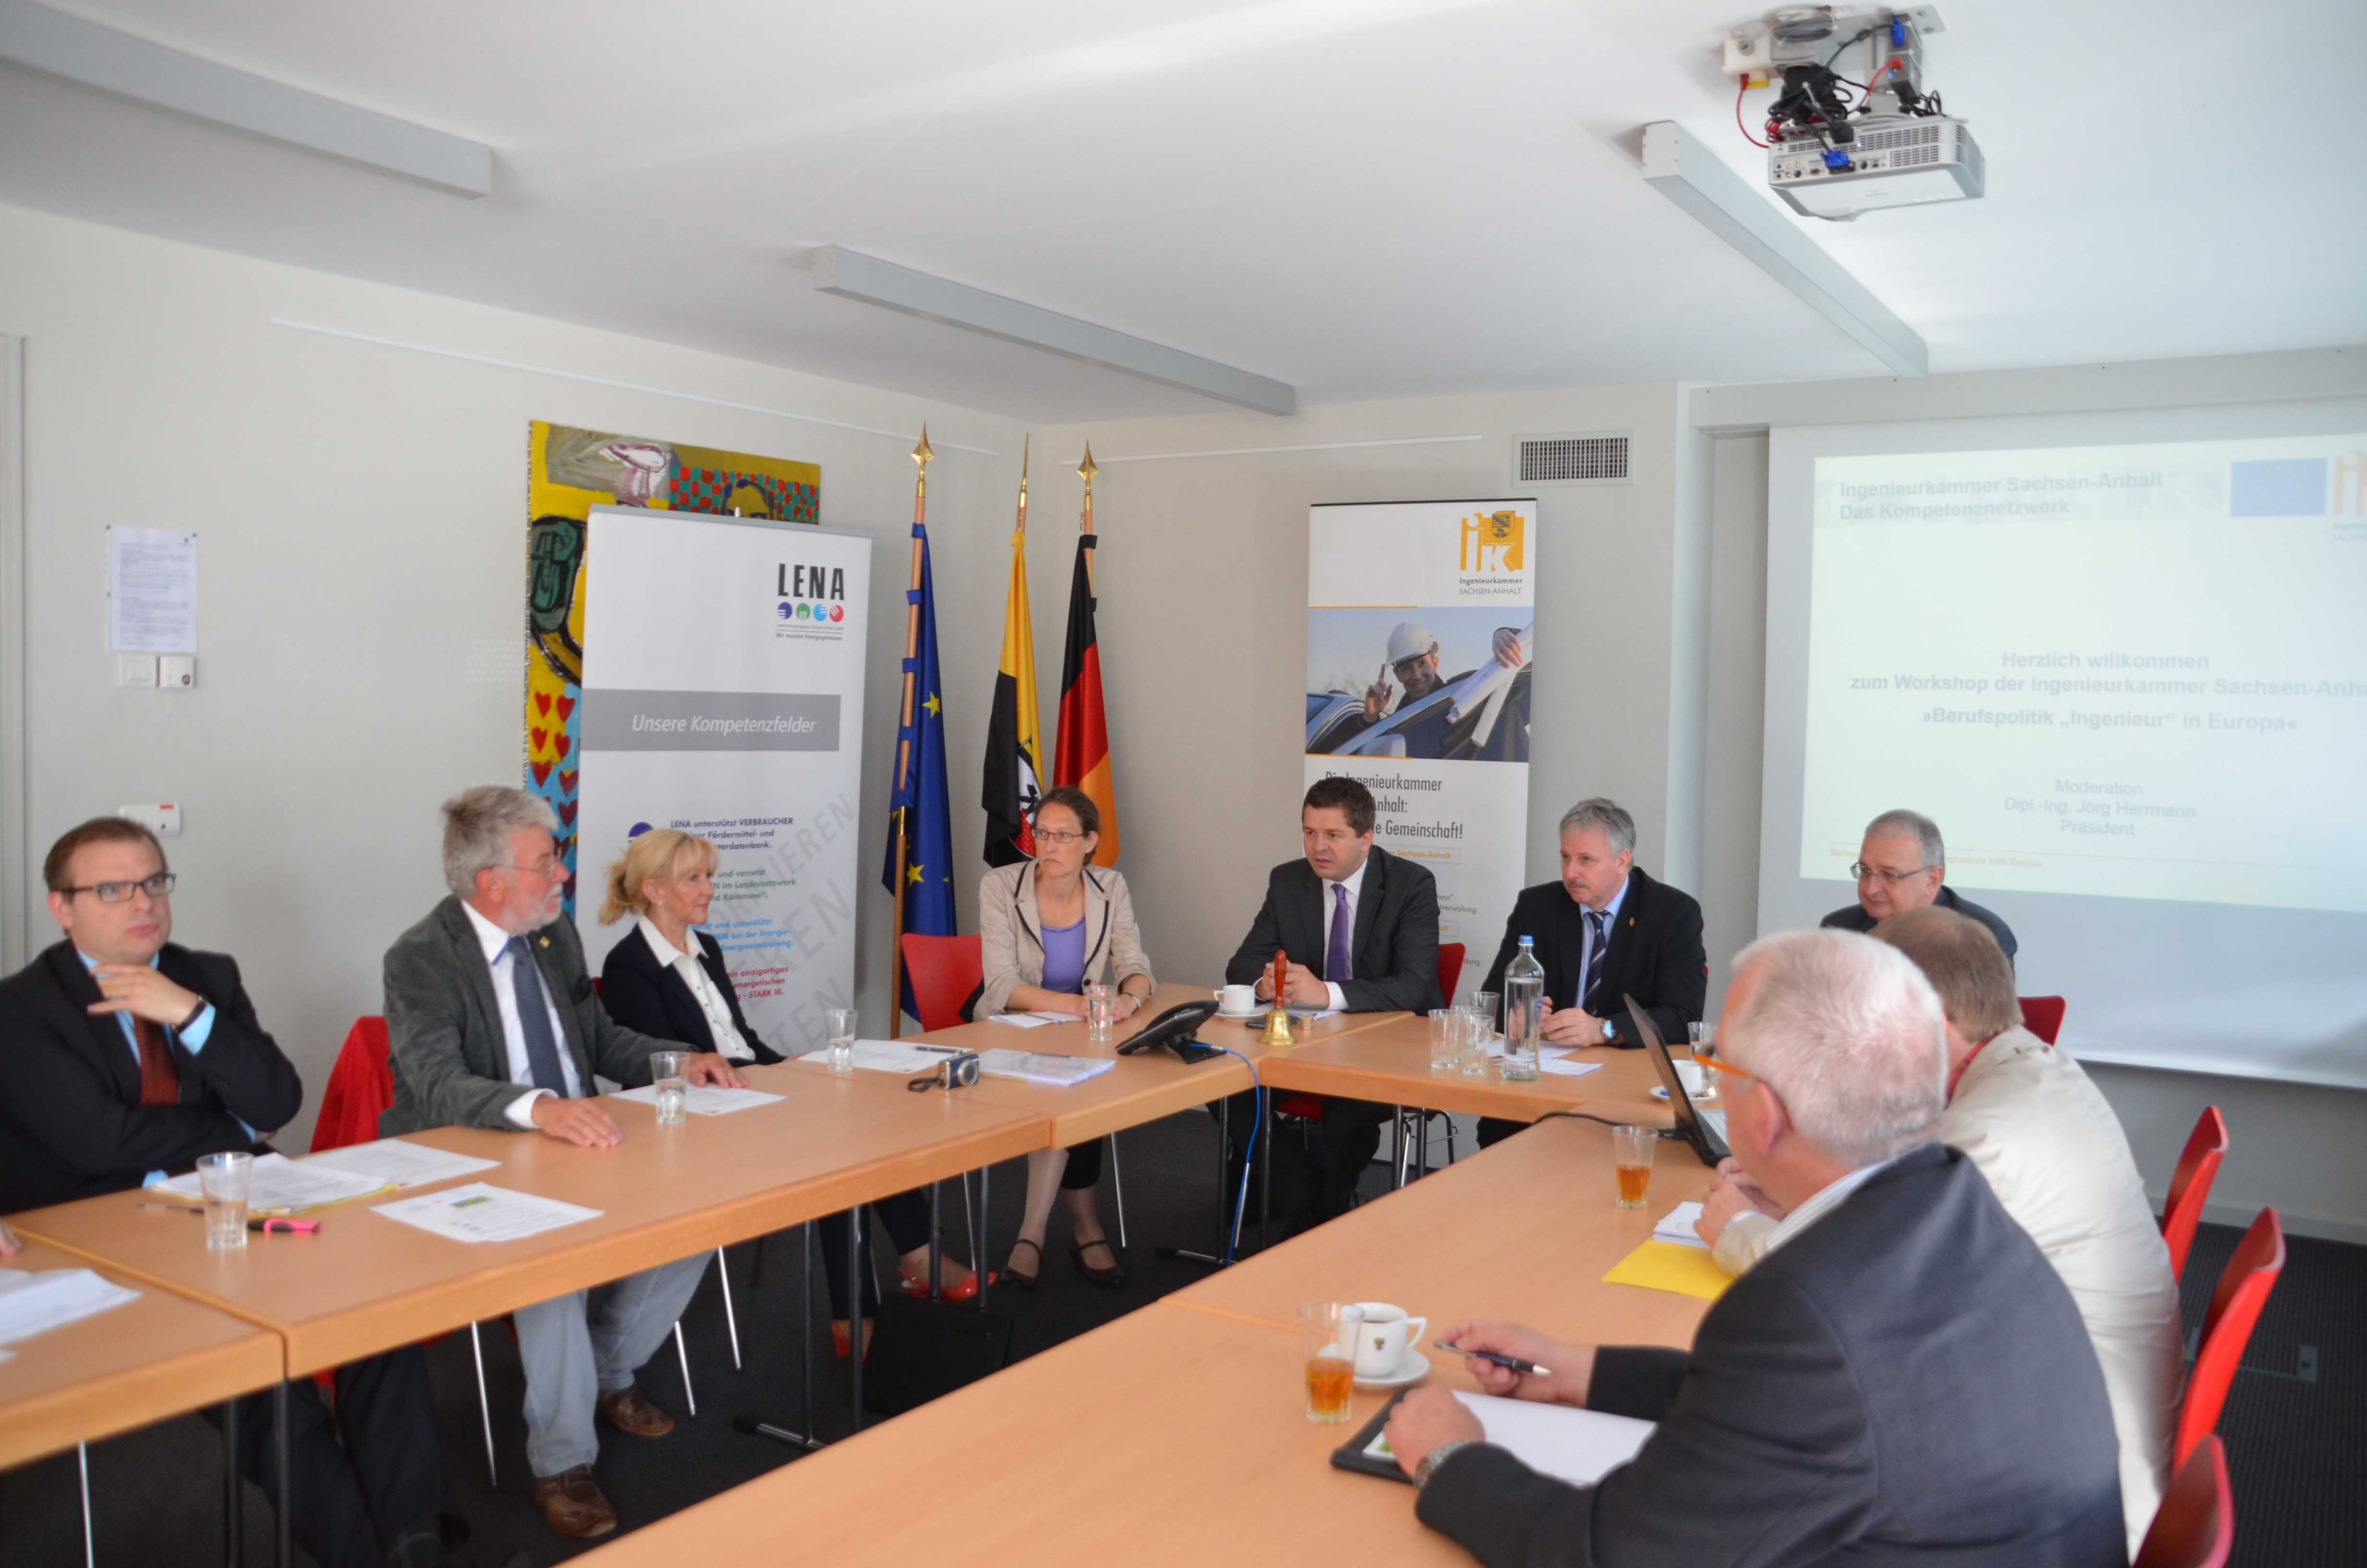 Workshop Berufspolitik - Ingenieur in Europa - unter anderem mit dem CDU-Abgeordneten des Europäischen Parlaments für Sachsen-Anhalt Sven Schulze (Bild: Mitte)